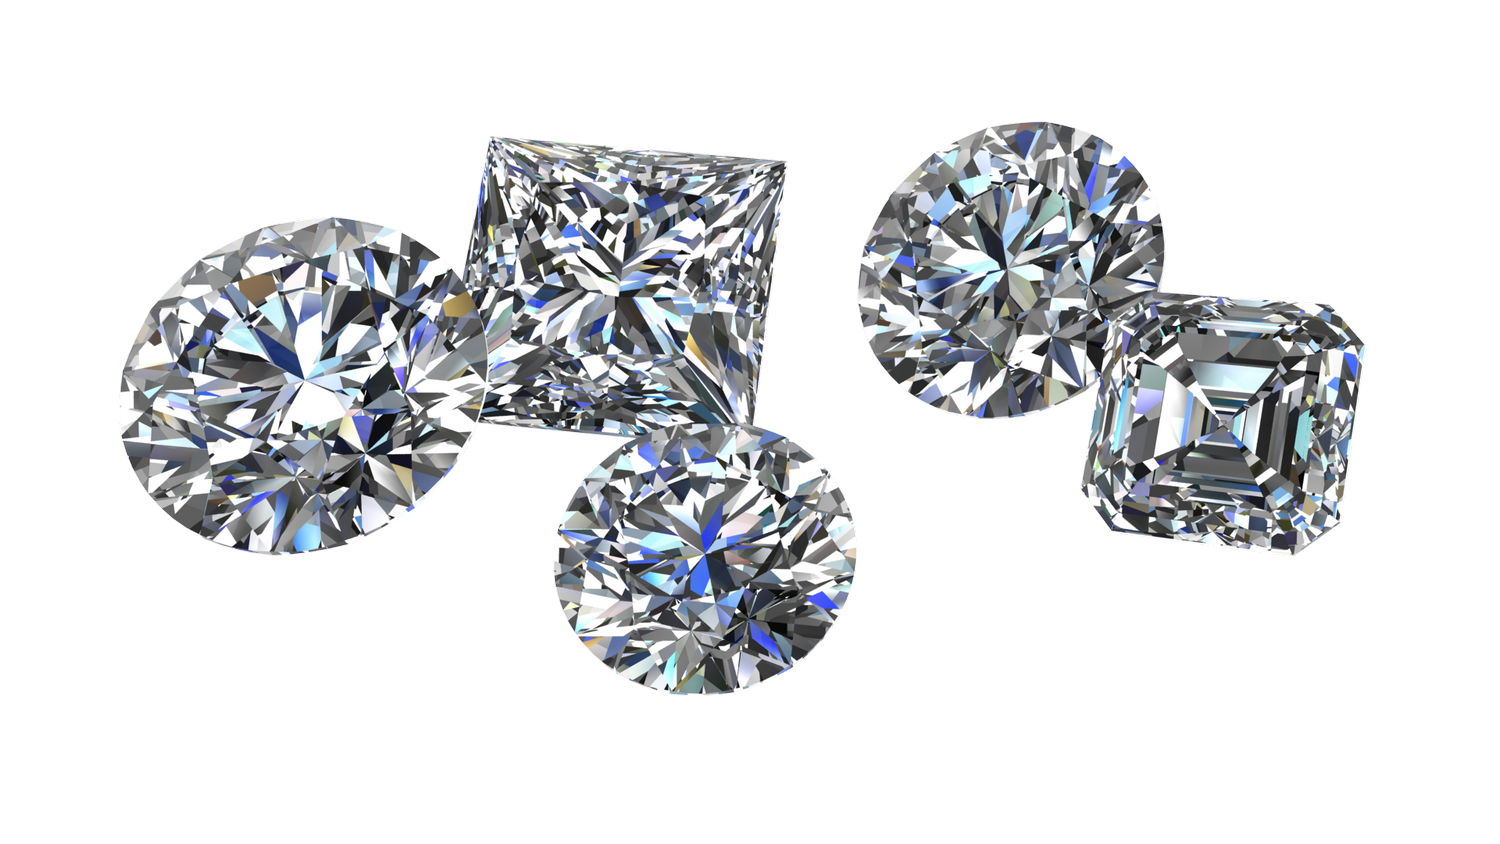 Dárkový poukaz na RED BOX DIAMONDS - certifikovaný diamant v hodnotě 100 000 Kč